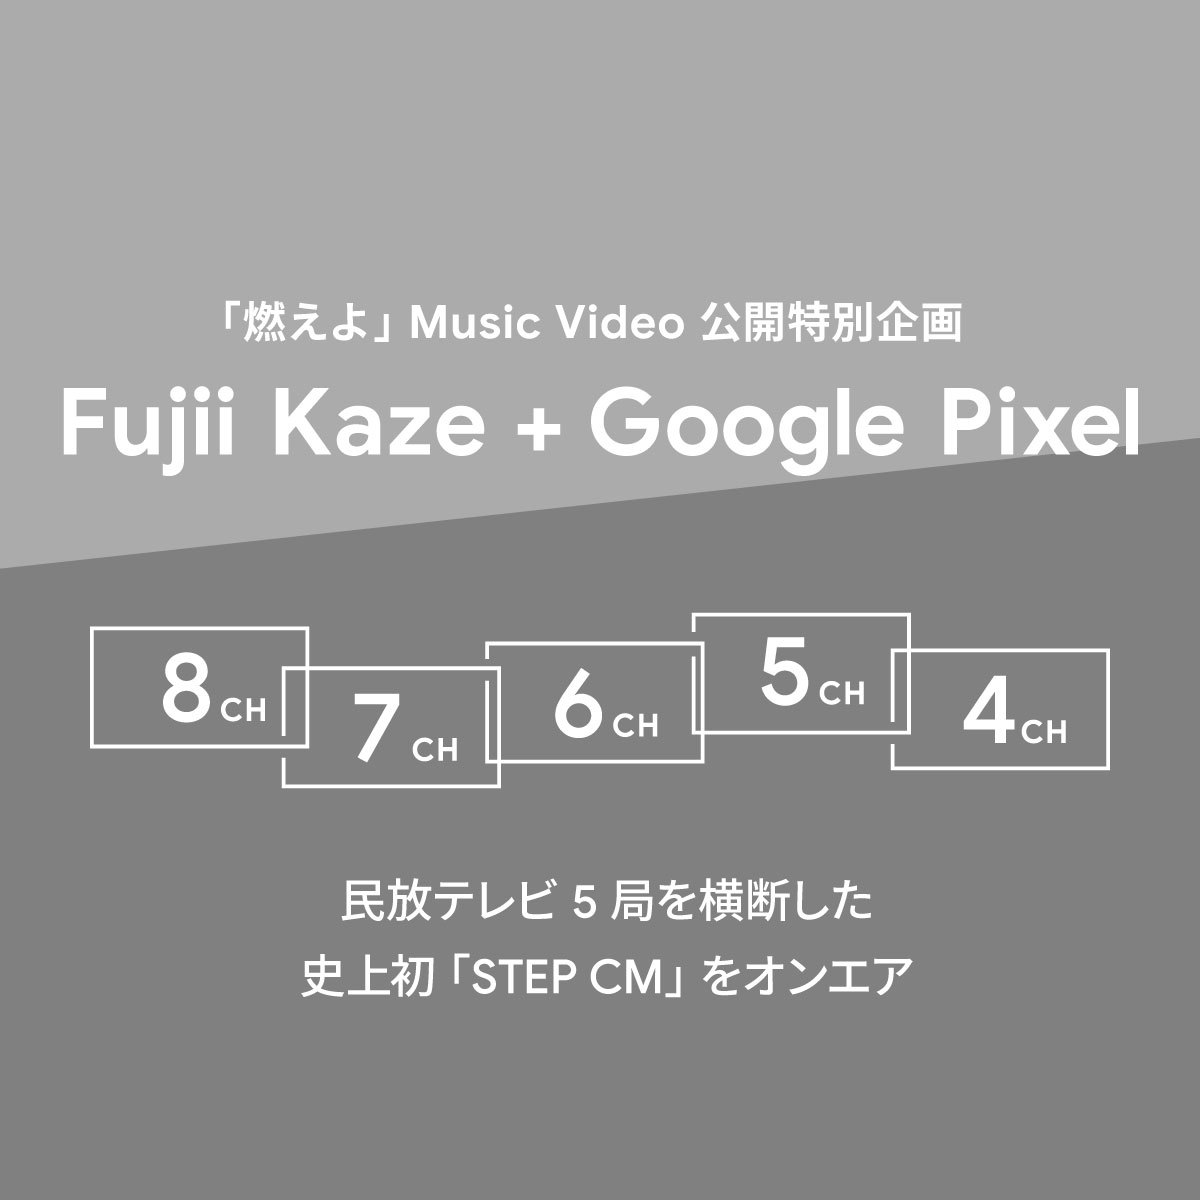 Fujii Kaze + Google Pixel